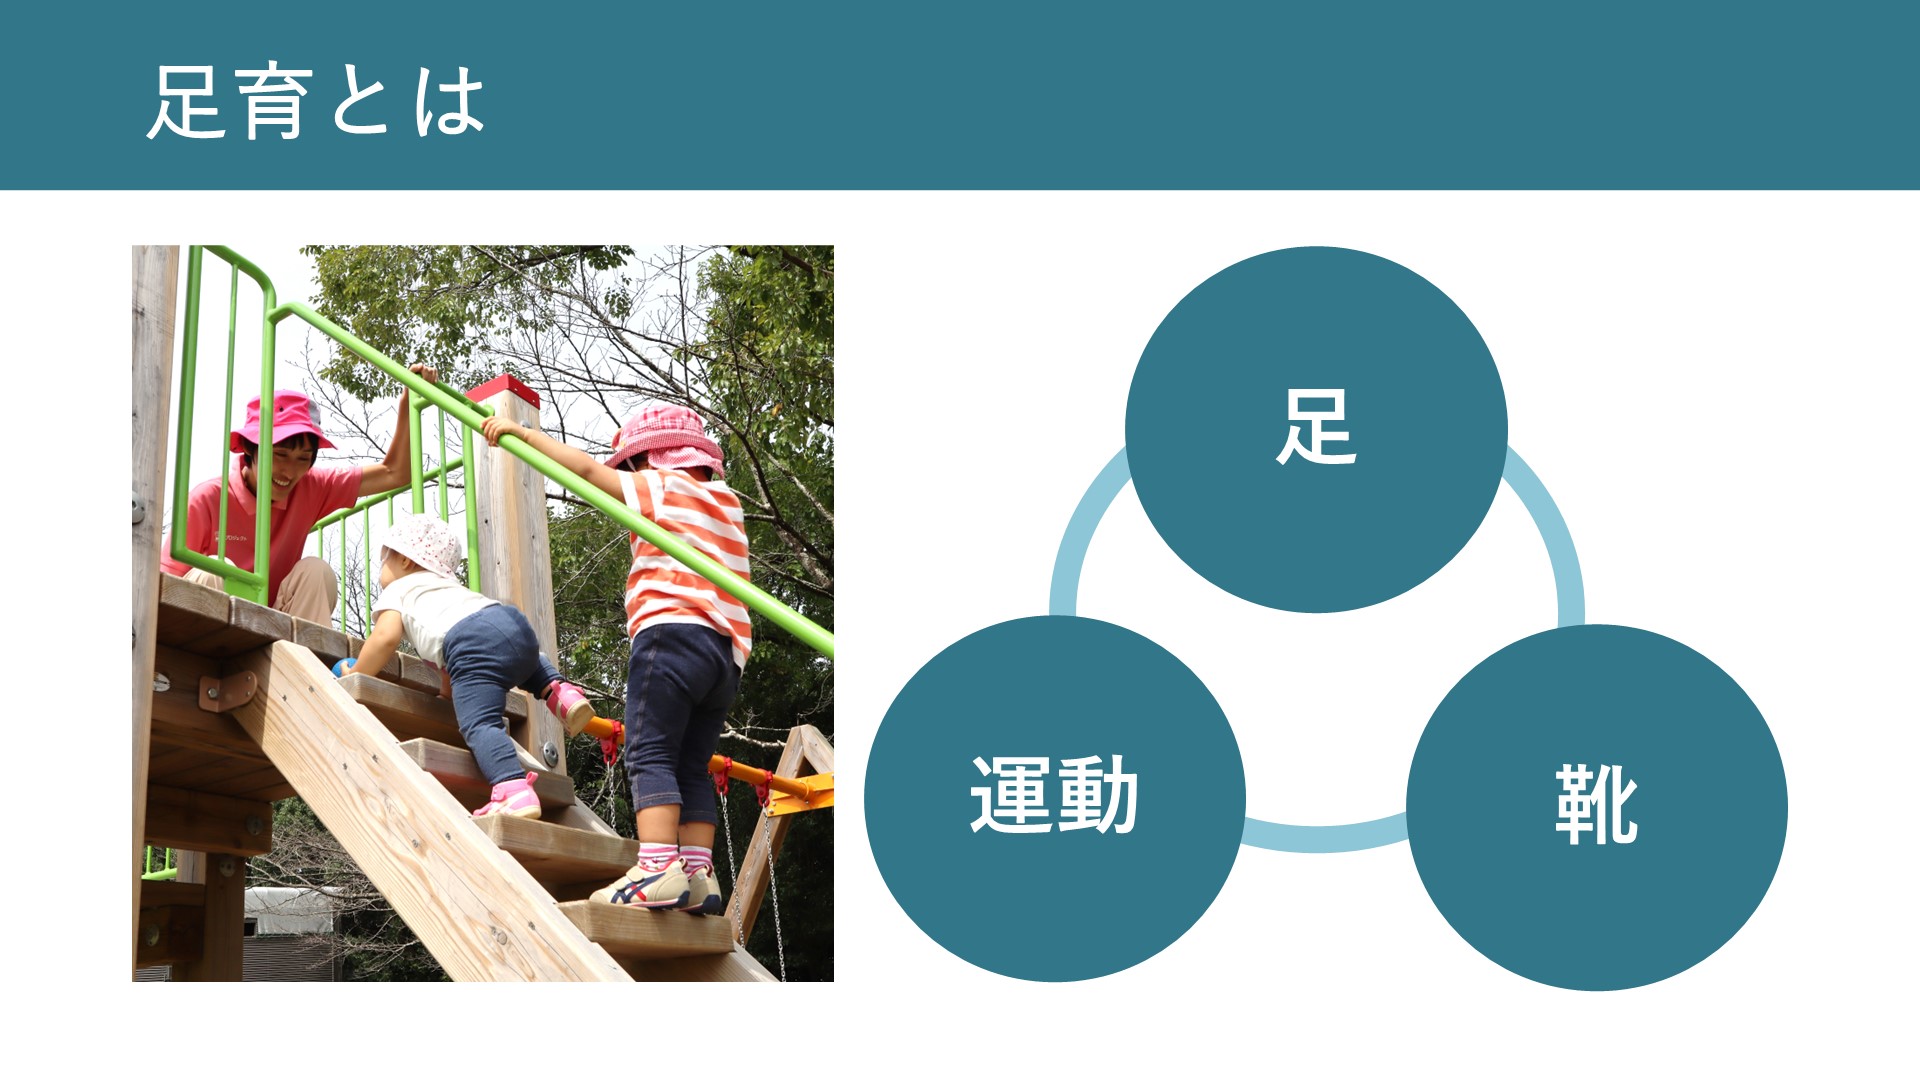 表彰式での発表スライド。すべり台の階段をよじのぼる幼児と成田の写真。足、靴、運動の3つのキーワードが輪でつながったイメージ。